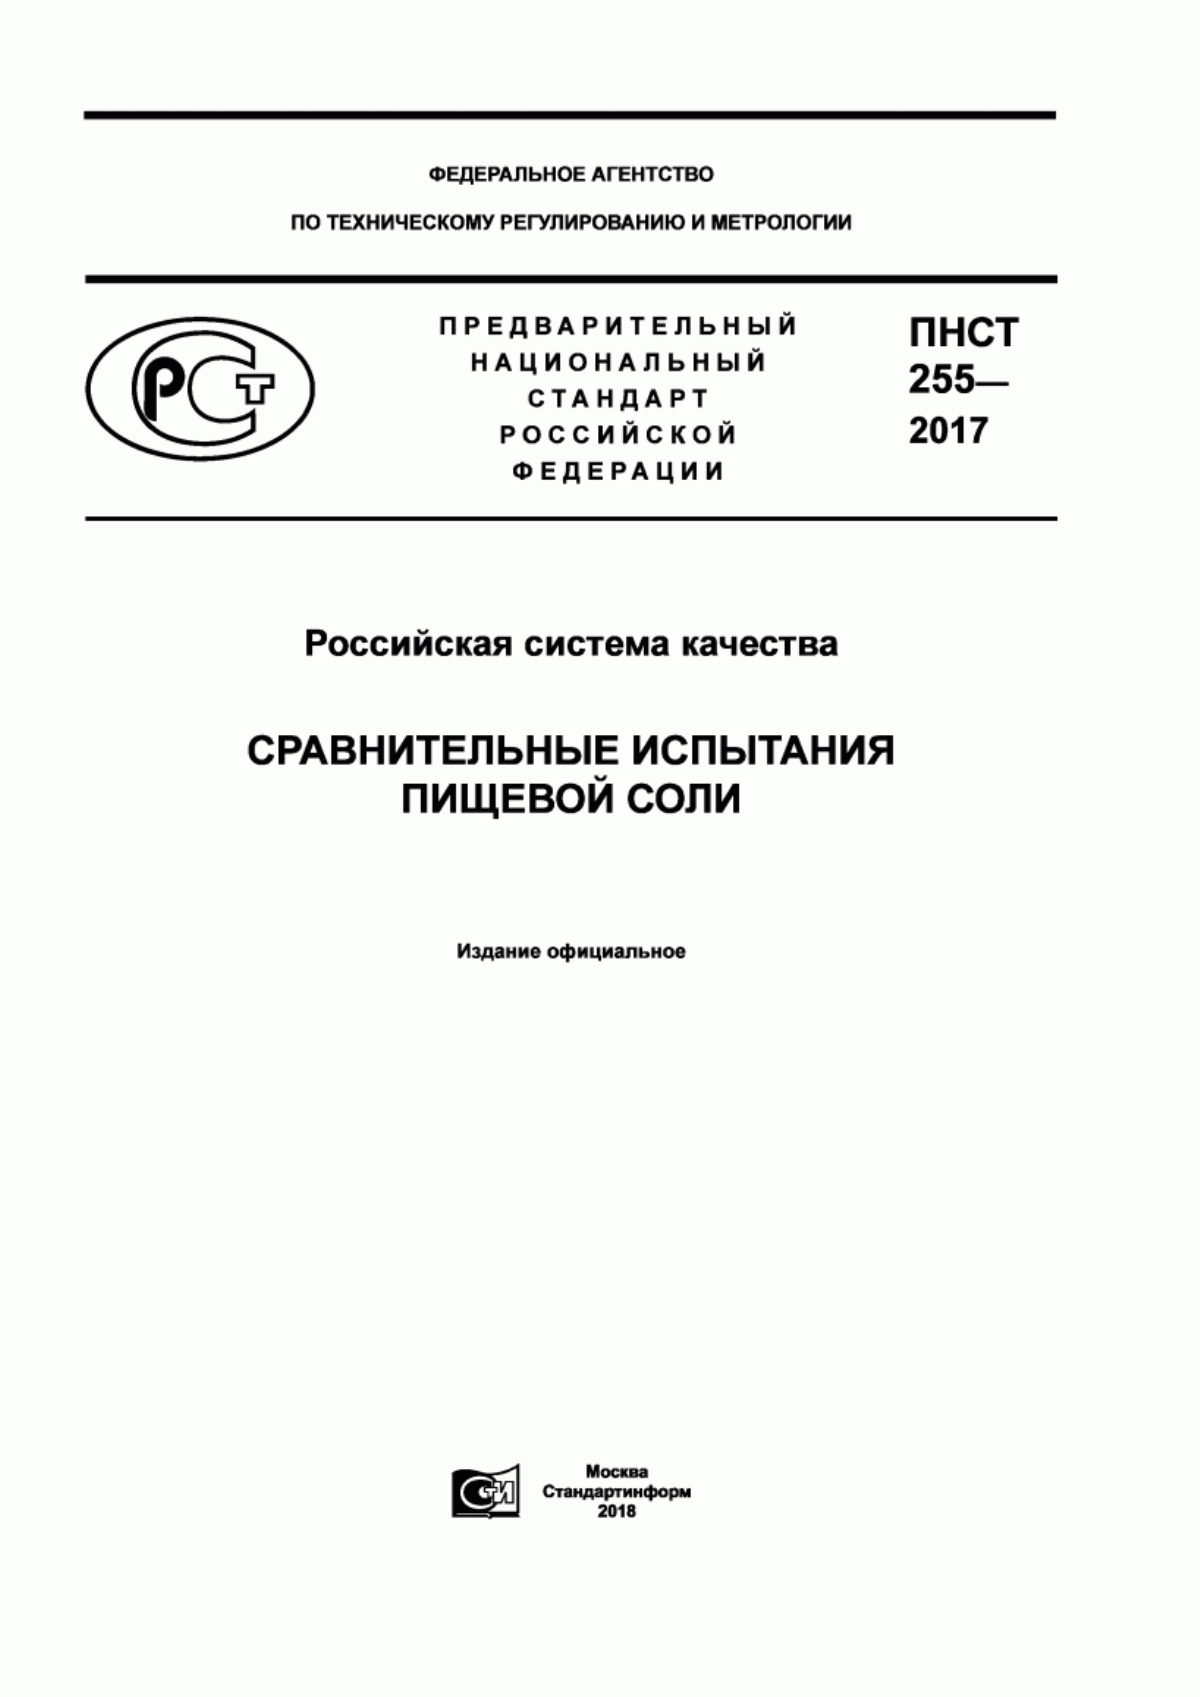 ПНСТ 255-2017 Российская система качества. Сравнительные испытания пищевой соли